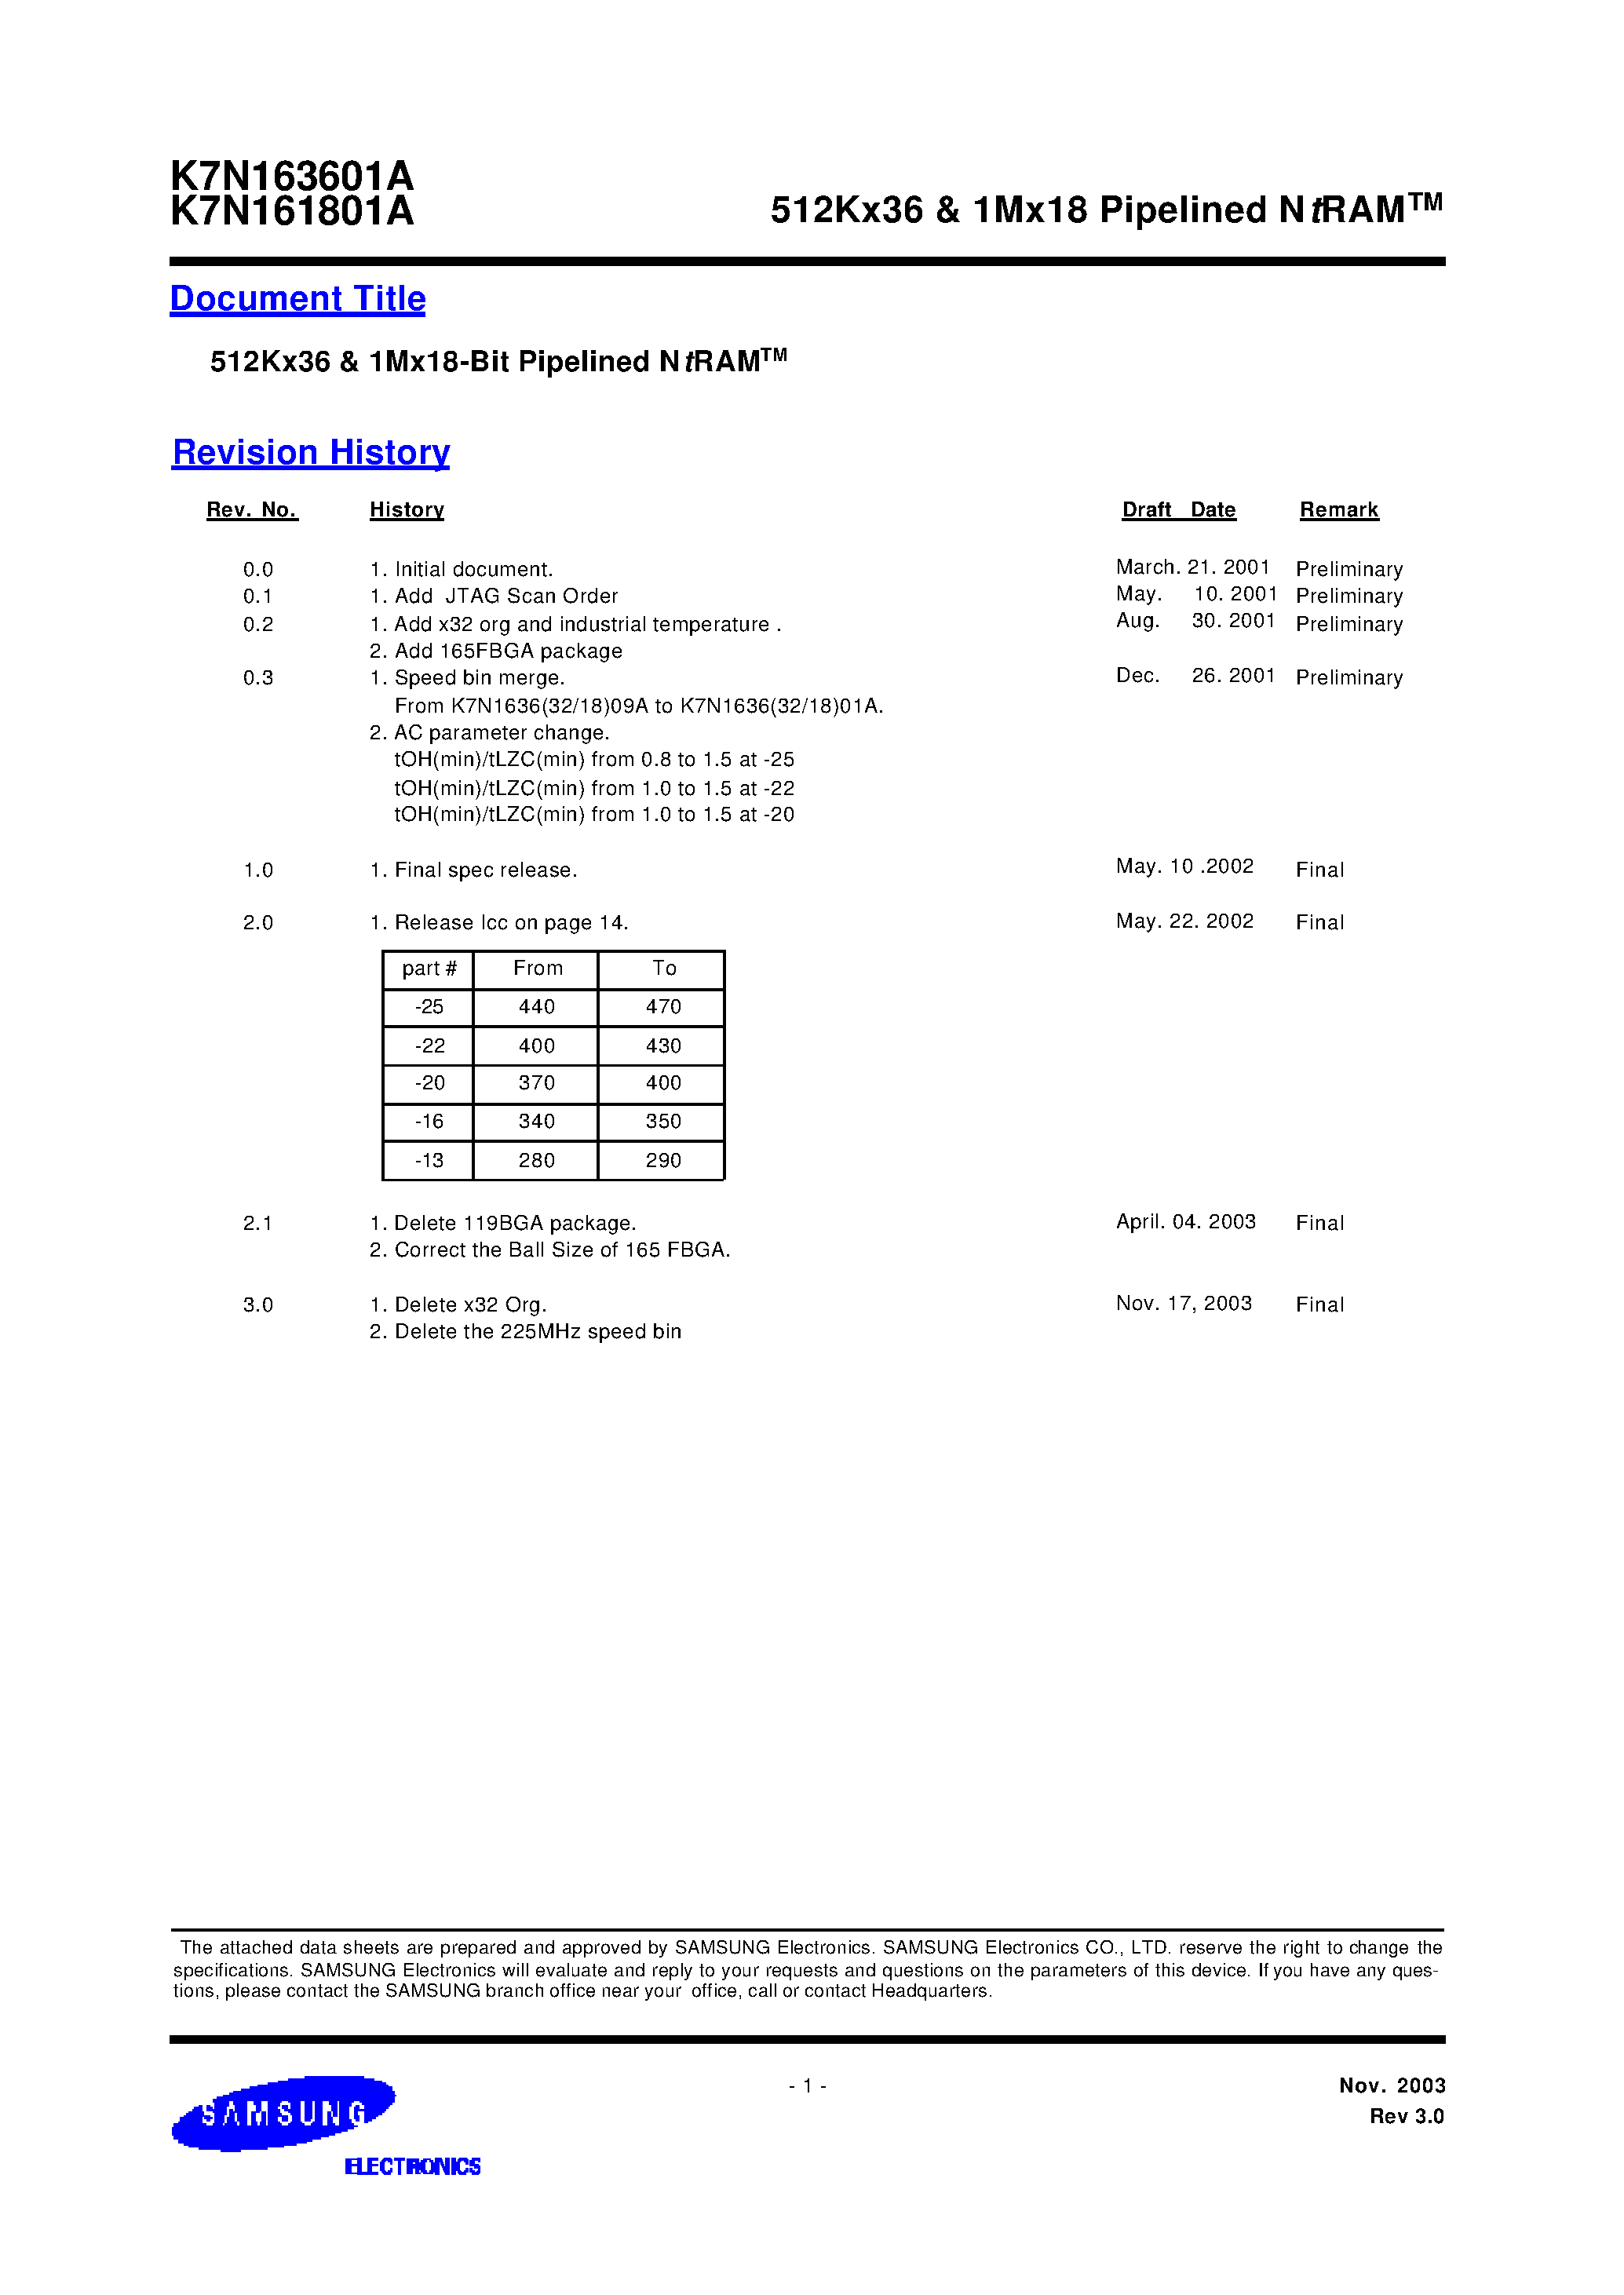 Даташит K7N161801A-Q(F)C(I)20 - 512Kx36 & 1Mx18 Pipelined NtRAM страница 1